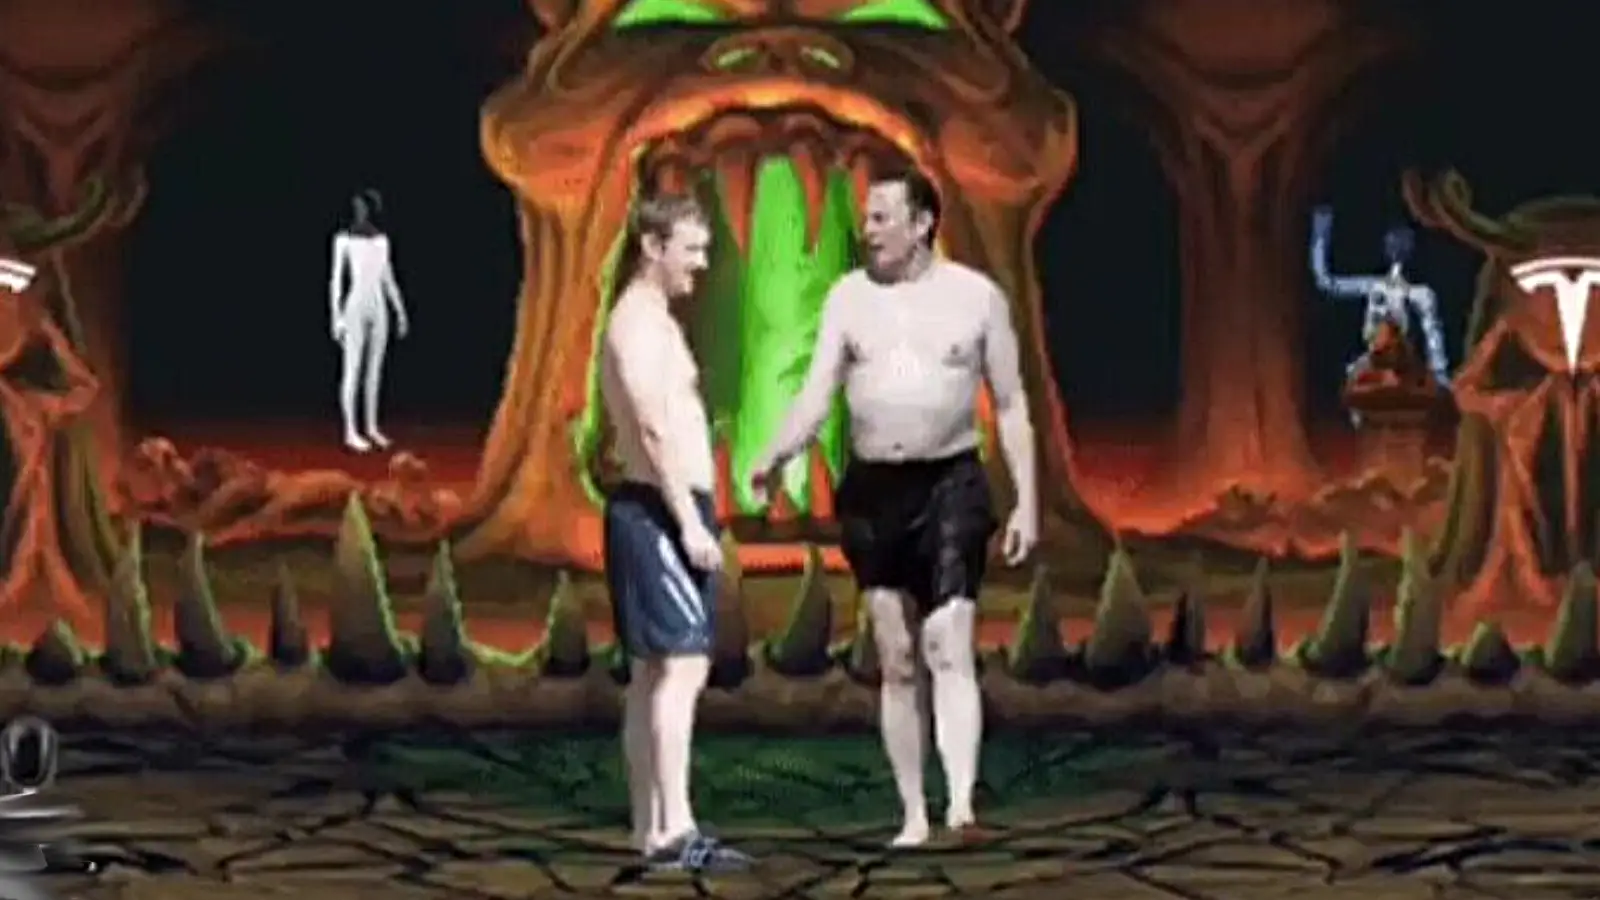 Создатель Mortal Kombat, показал фаталити Илона Маска над Марком Цукербергом